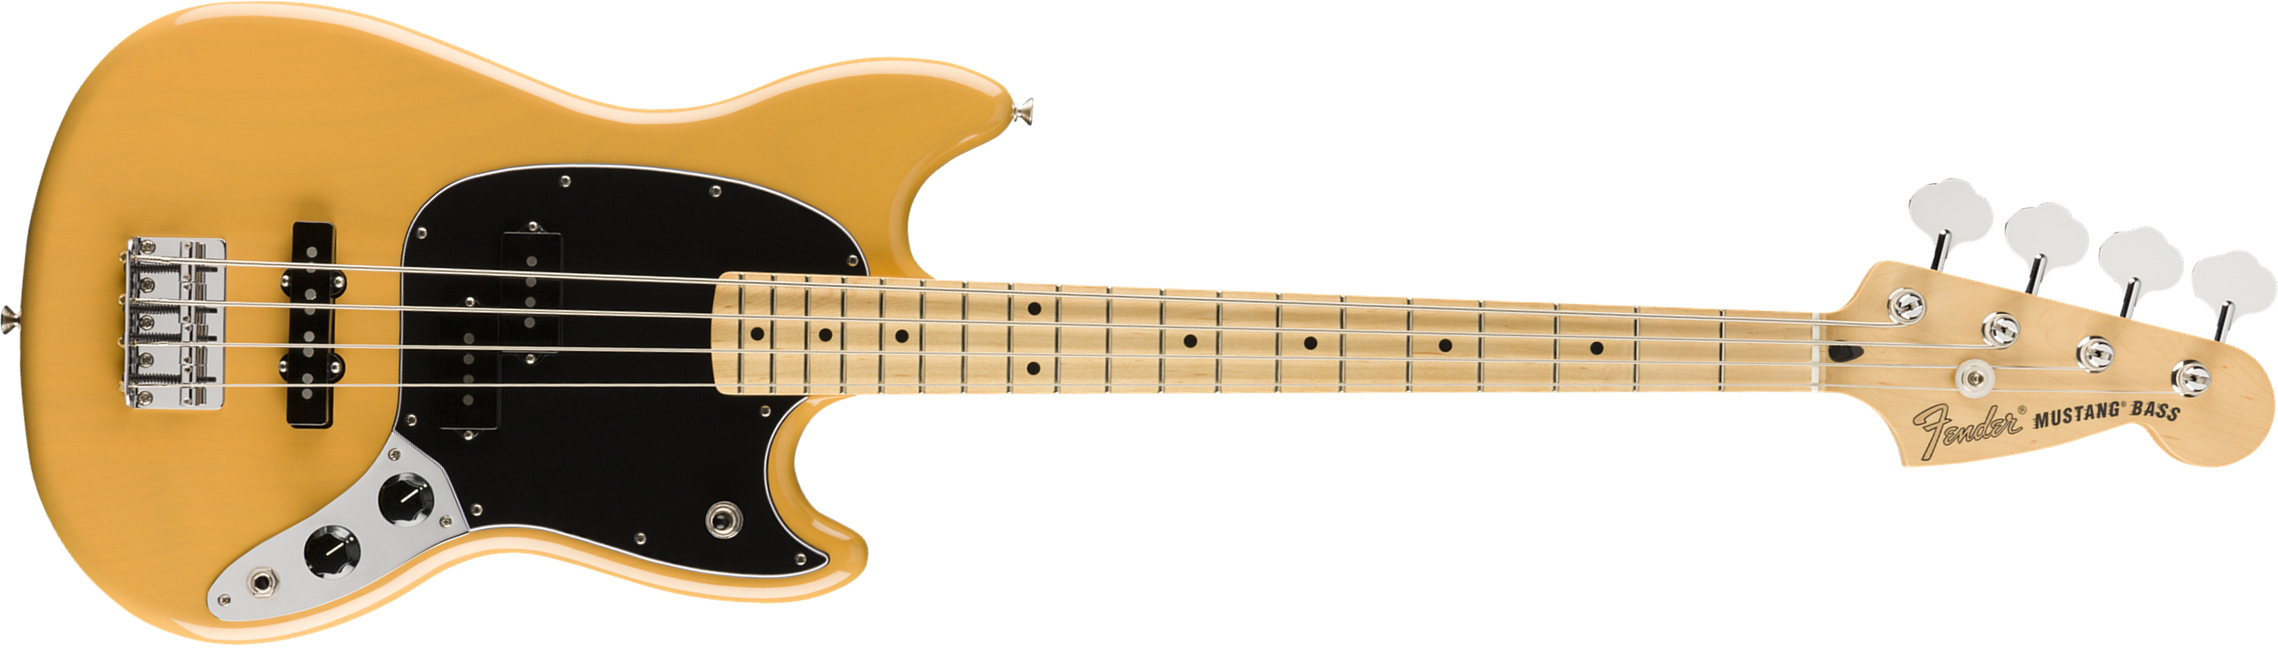 Fender Mustang Bass Pj Player Ltd Mex Mn - Butterscotch Blonde - Short scale elektrische bas - Main picture